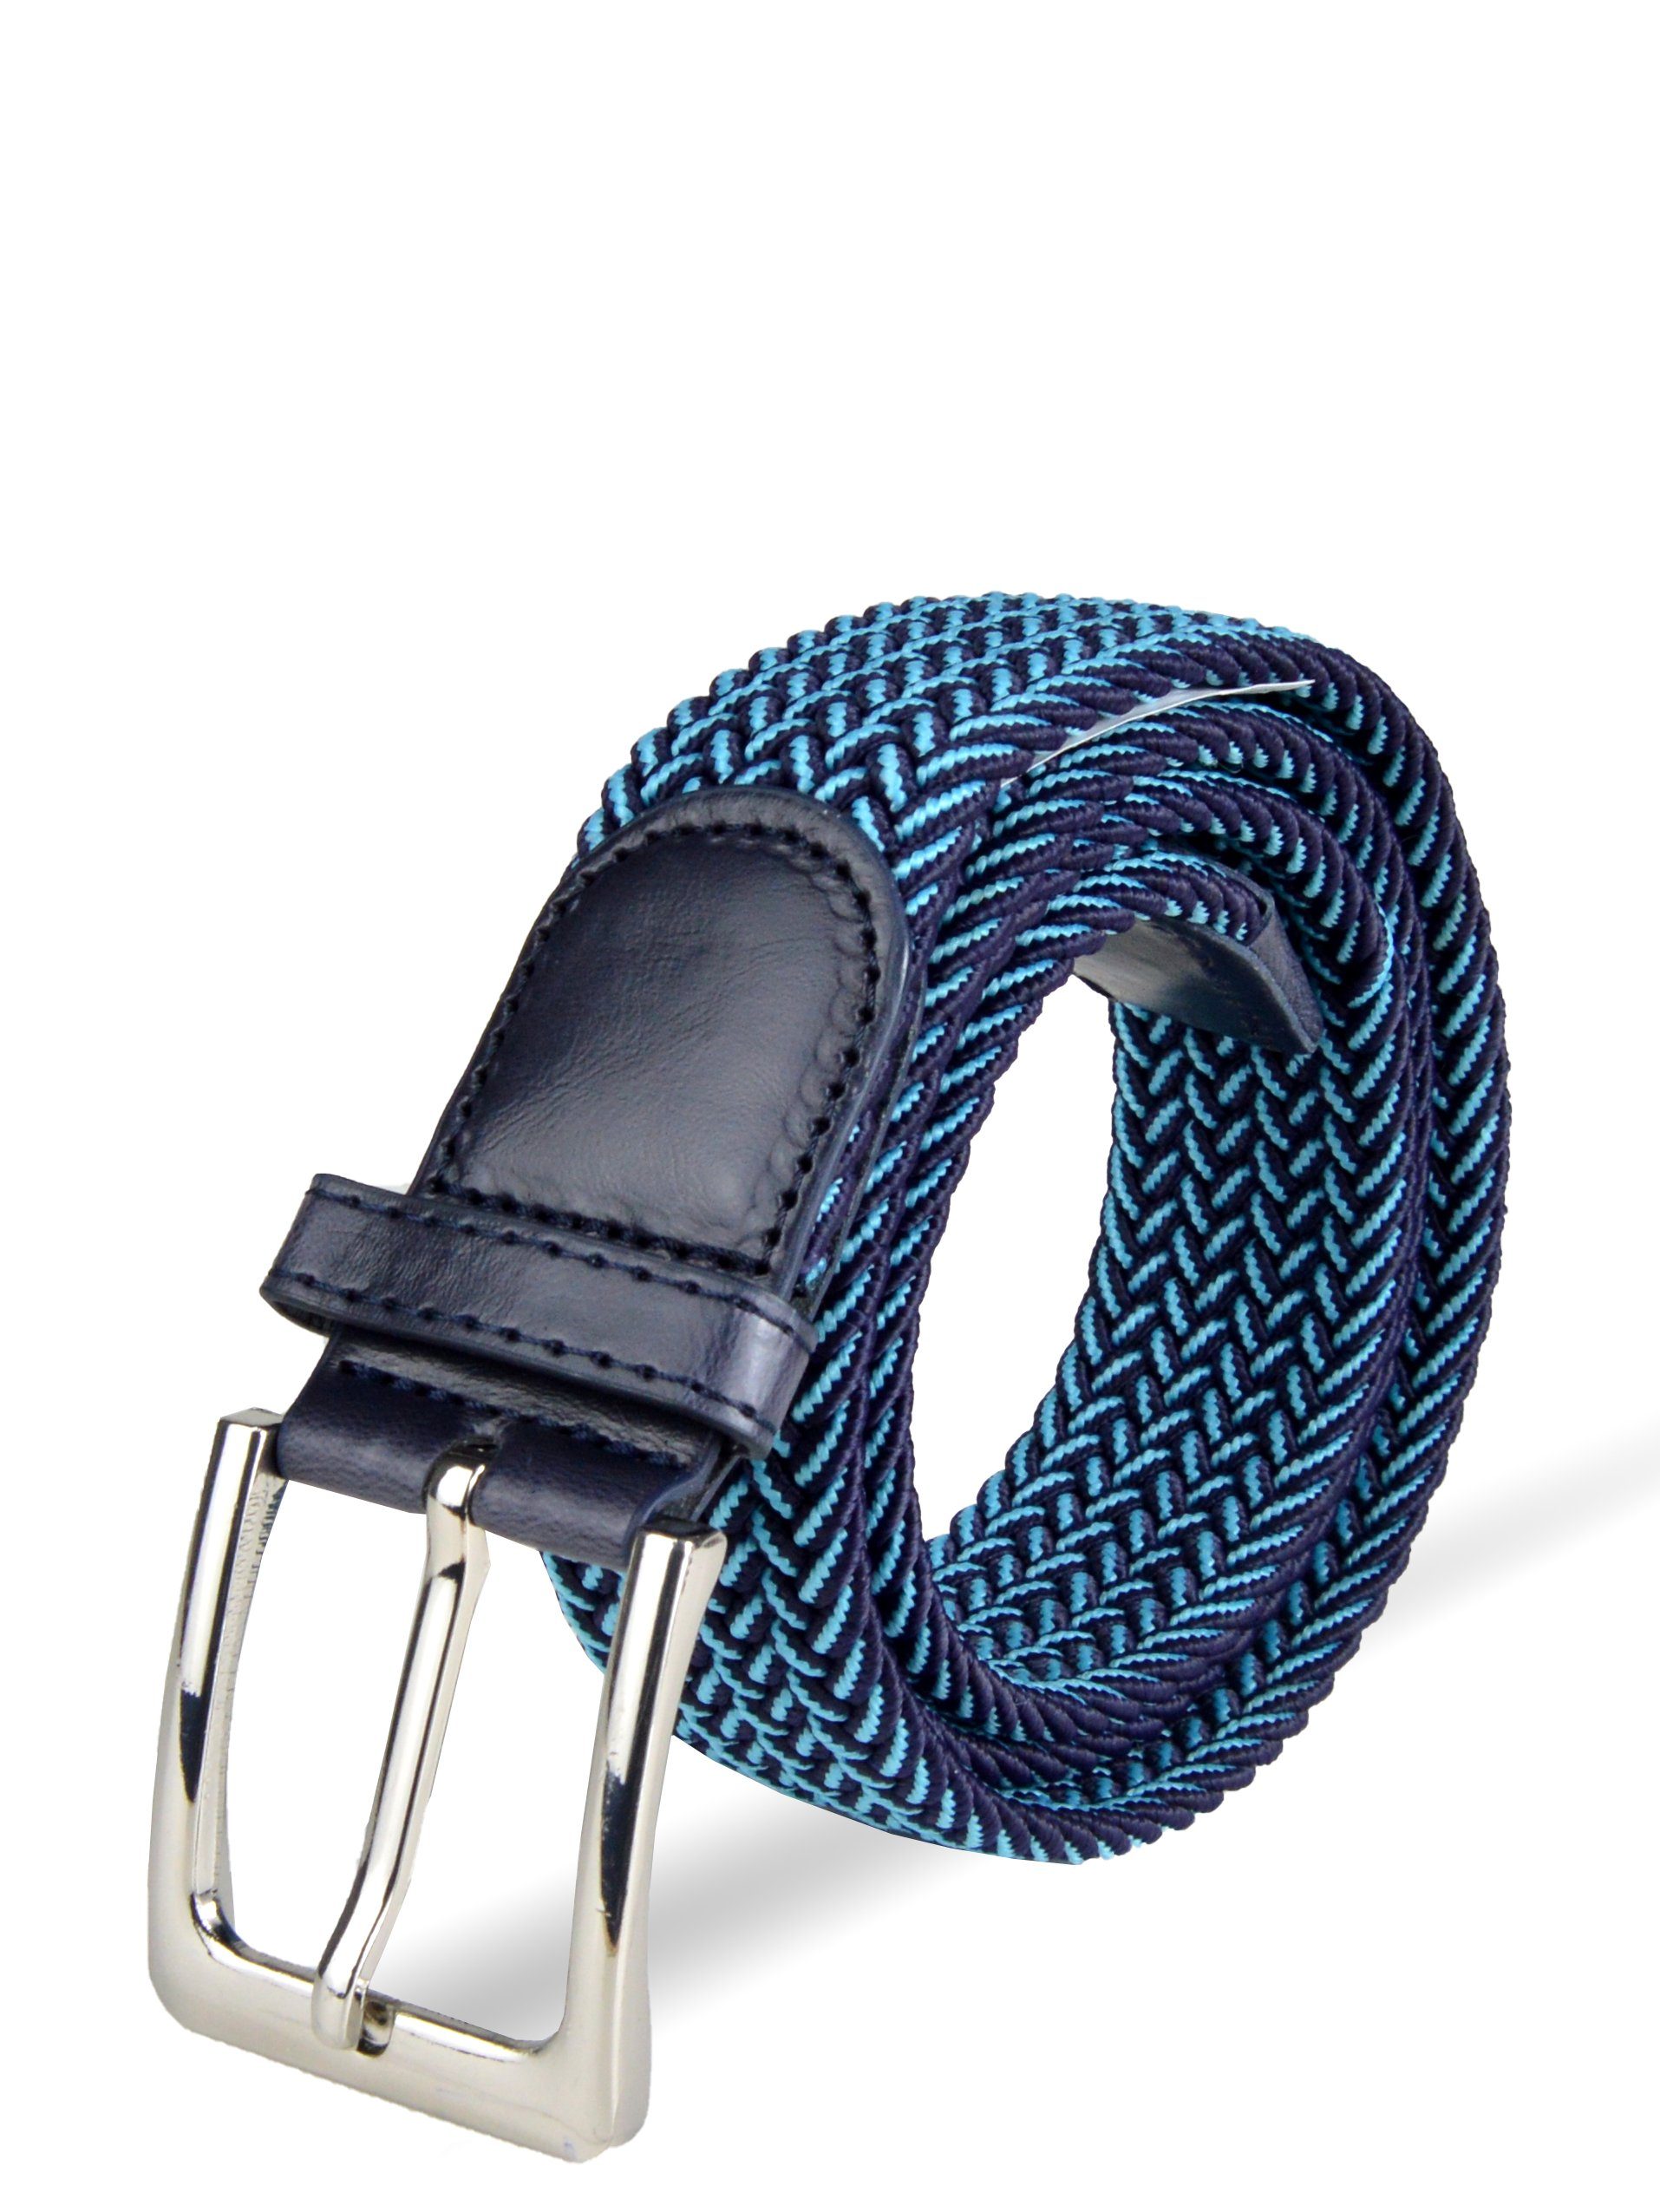 Socked Stoffgürtel Herren Stretchgürtel stufenlos elastischer Blau-Hellblau (105-150cm) einstellbar, Flechtgürtel